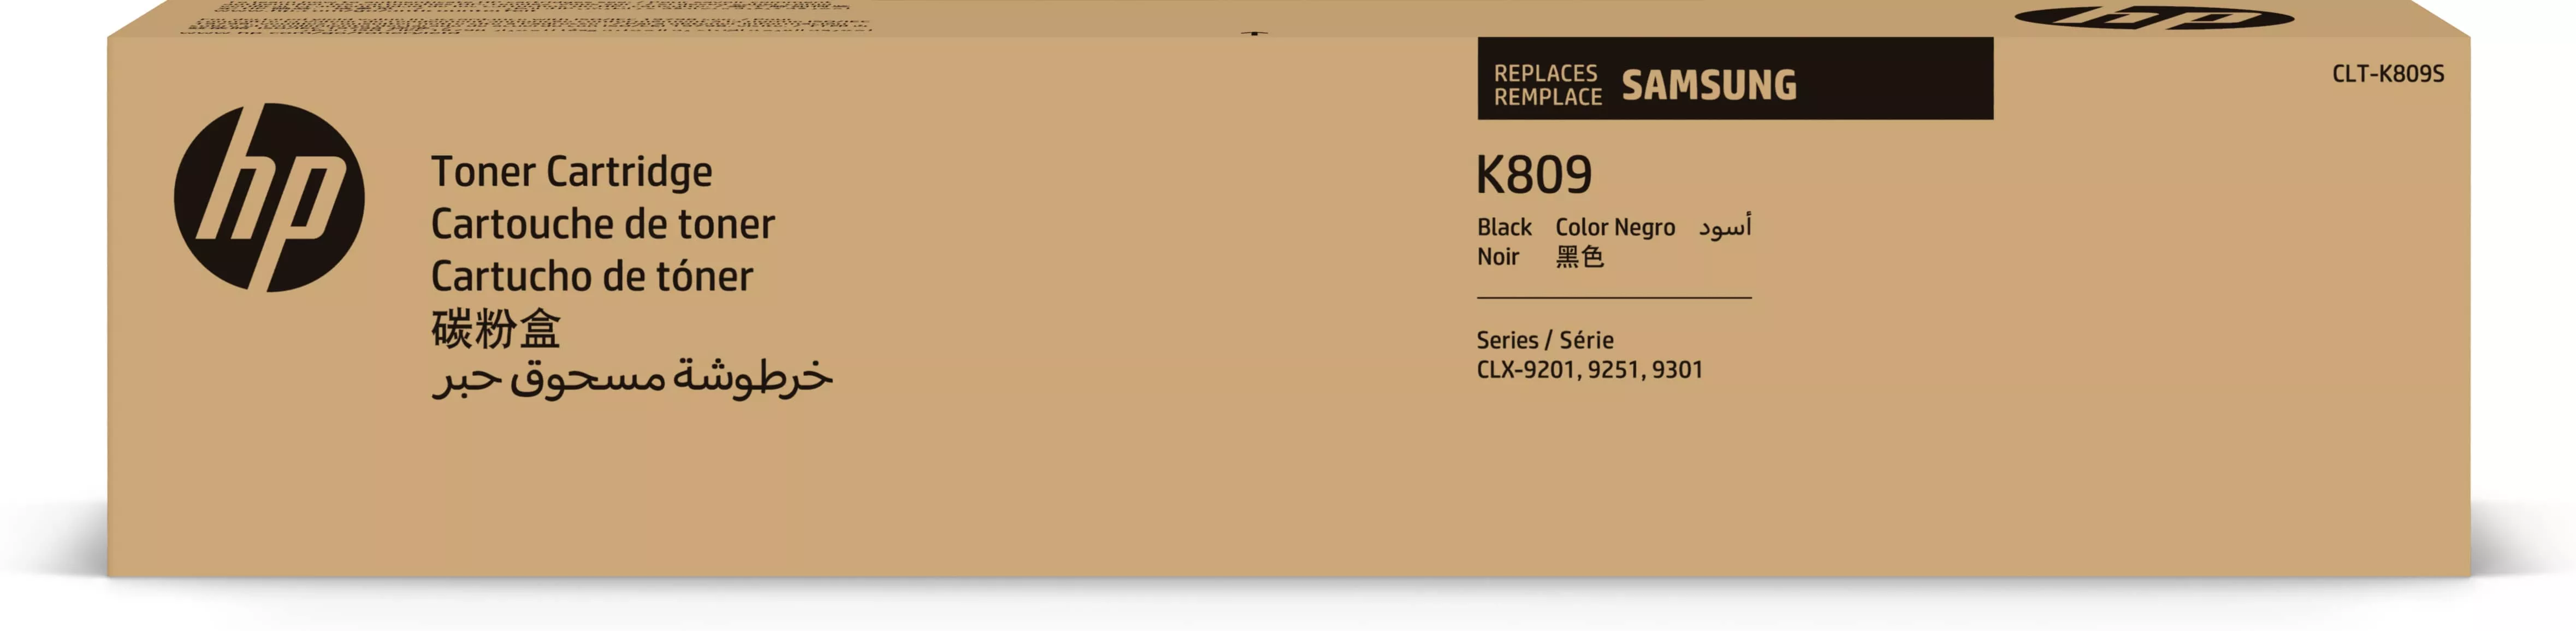 Achat SAMSUNG CLT-K809S/ELS Black Toner Cartridge HP au meilleur prix